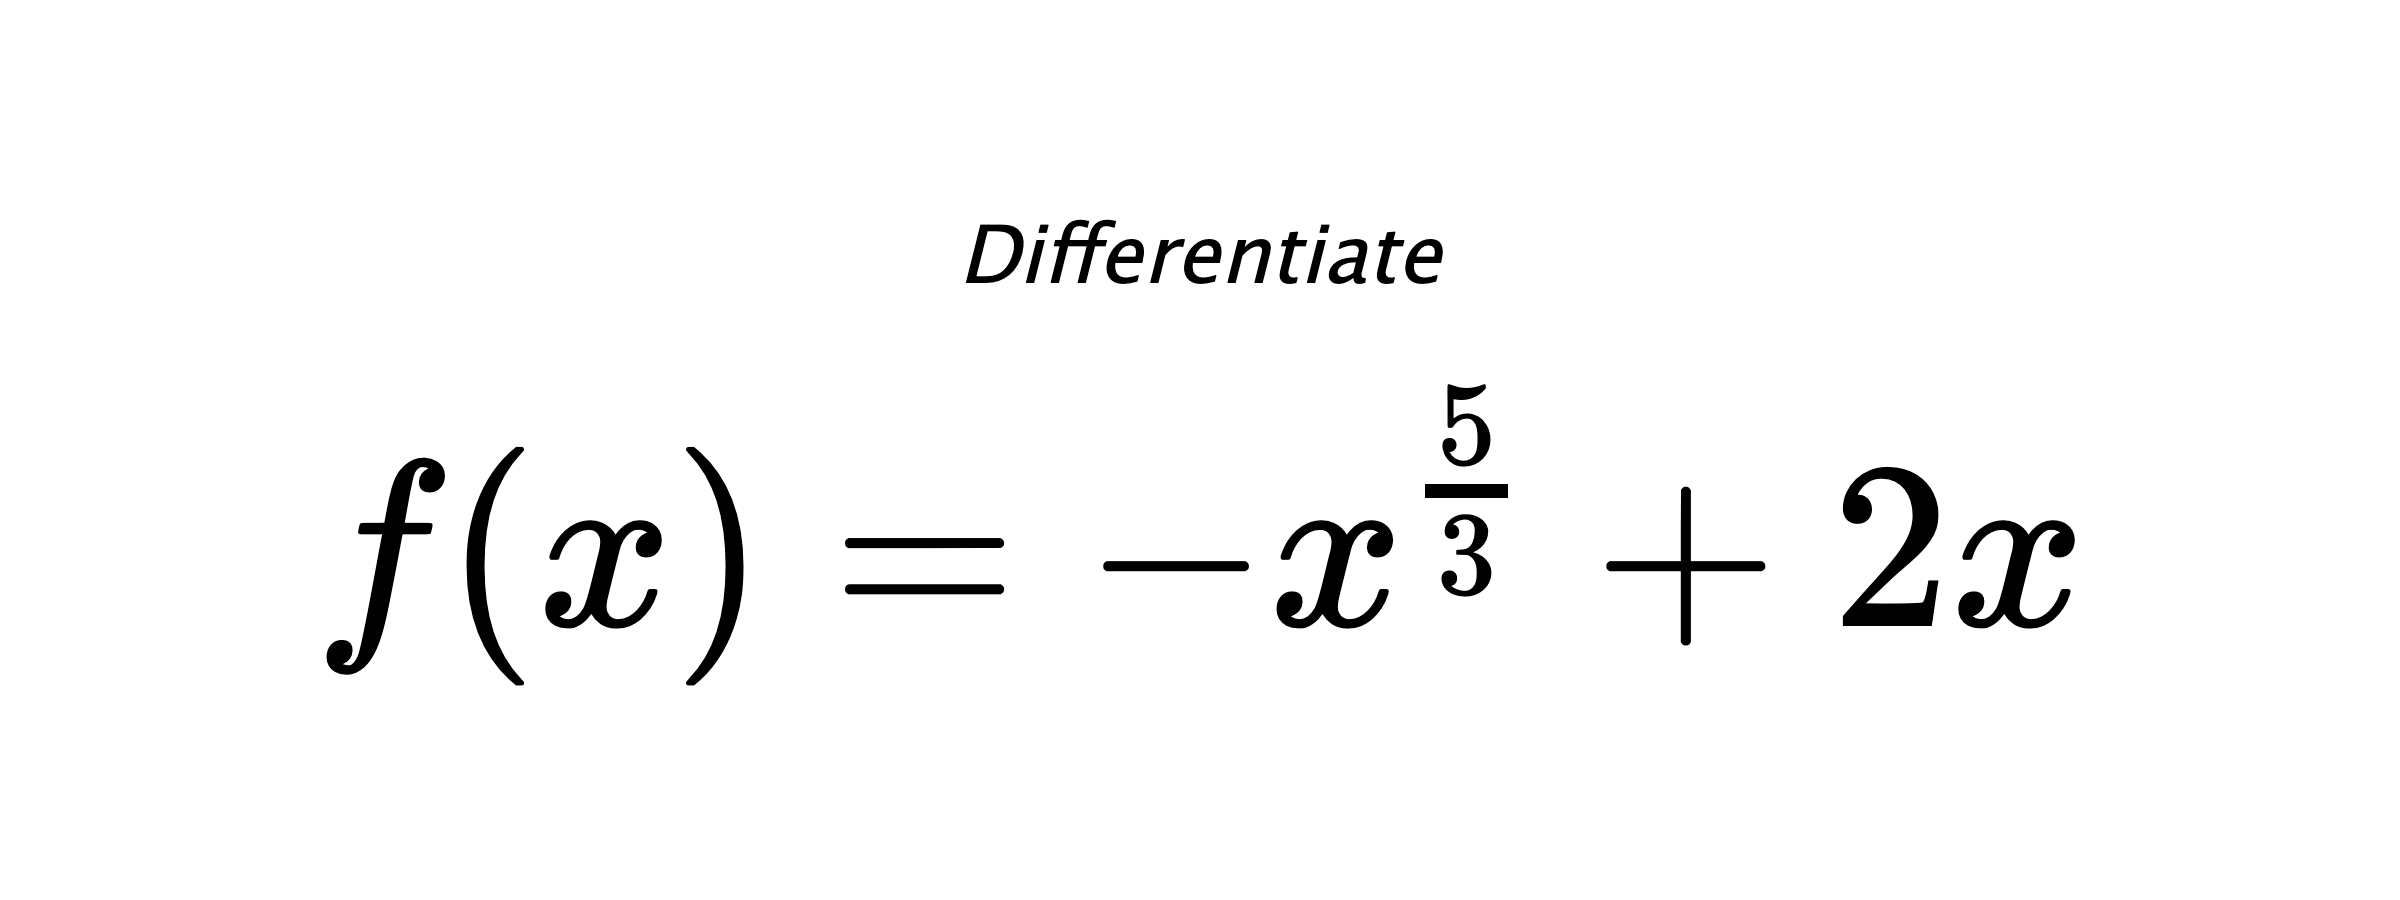 Differentiate $ f(x) = - x^{\frac{5}{3}} + 2 x $